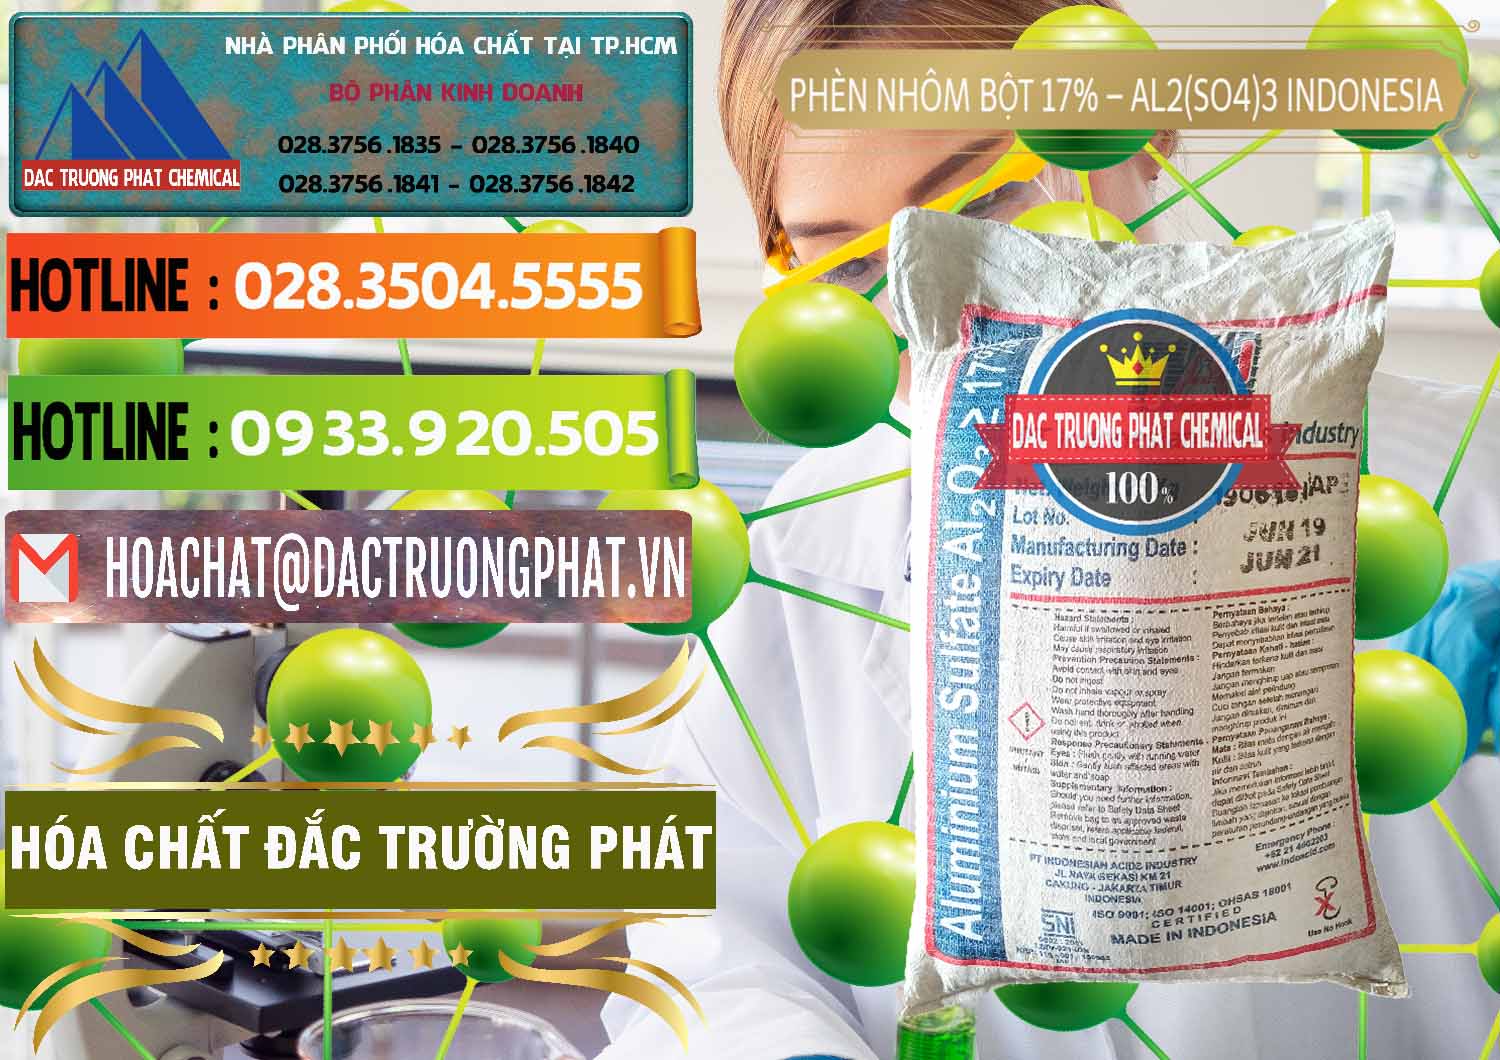 Nhà cung ứng - bán Phèn Nhôm Bột - Al2(SO4)3 17% bao 25kg Indonesia - 0114 - Nơi chuyên nhập khẩu & phân phối hóa chất tại TP.HCM - cungcaphoachat.com.vn